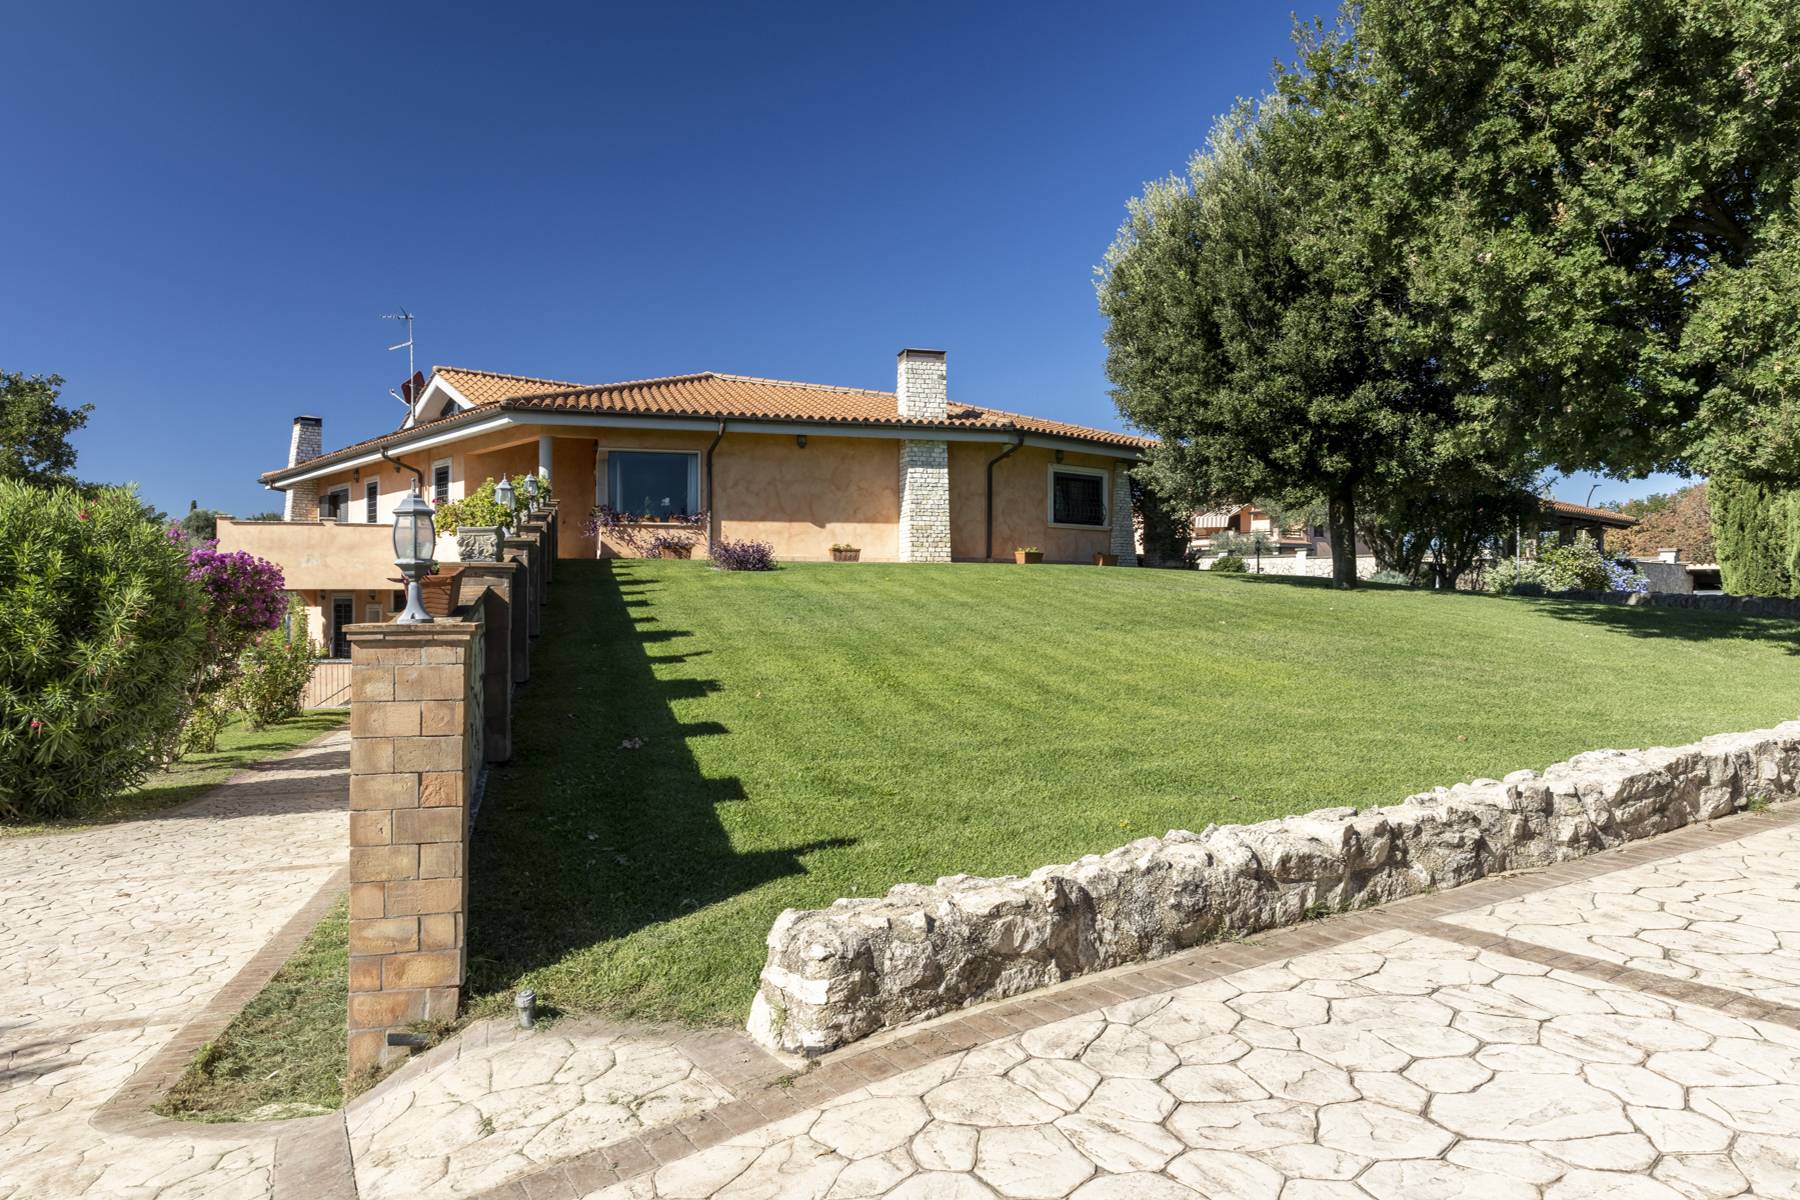 Villa in Vendita a Riano: 5 locali, 500 mq - Foto 5